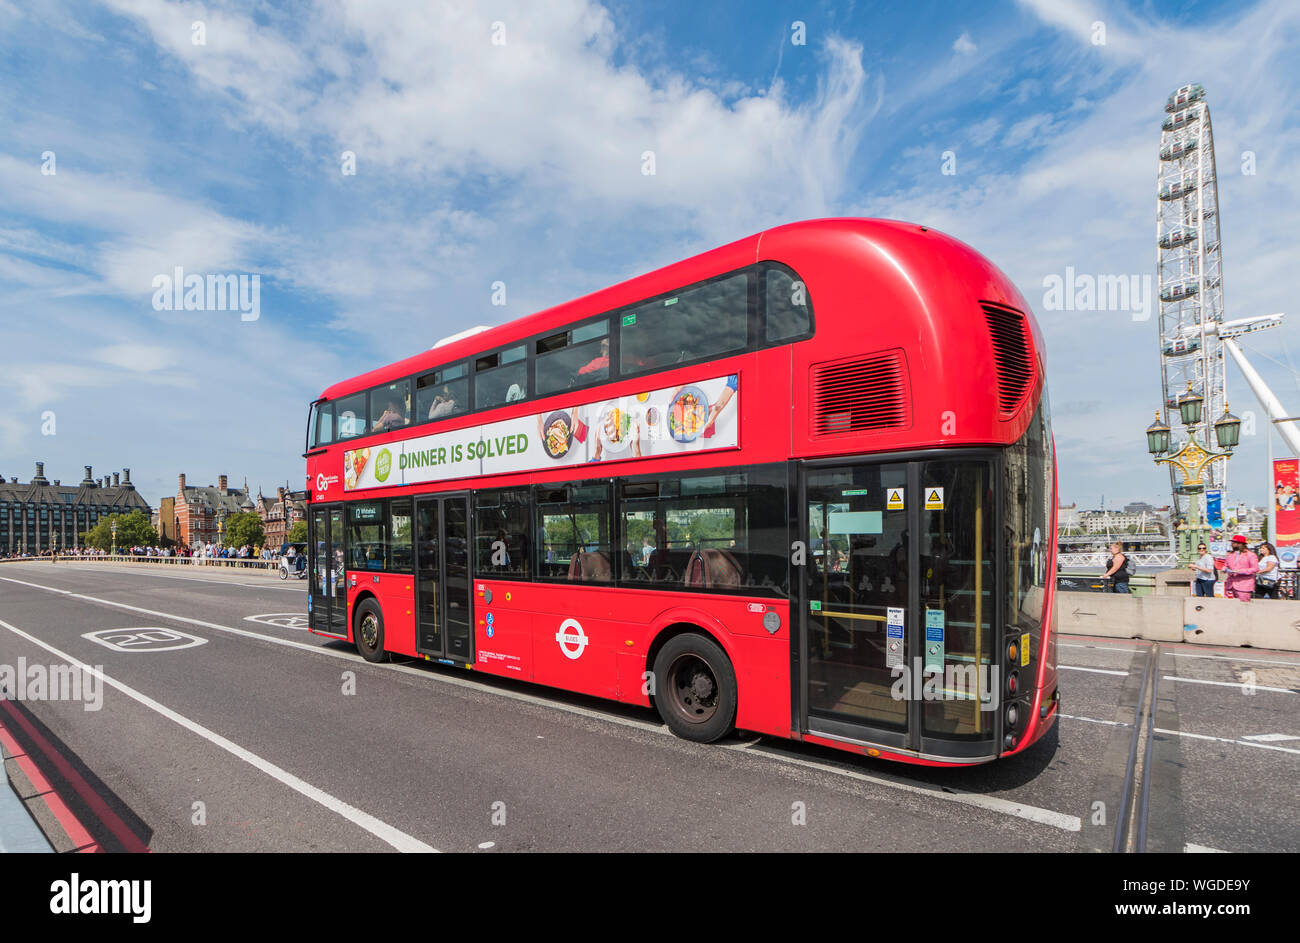 Wrightbus nuovi autobus Routemaster, originariamente nuovo autobus per Londra, un ibrido doppio deck red bus londinese nella City of Westminster, Londra, Regno Unito. Autobus di Londra. Foto Stock